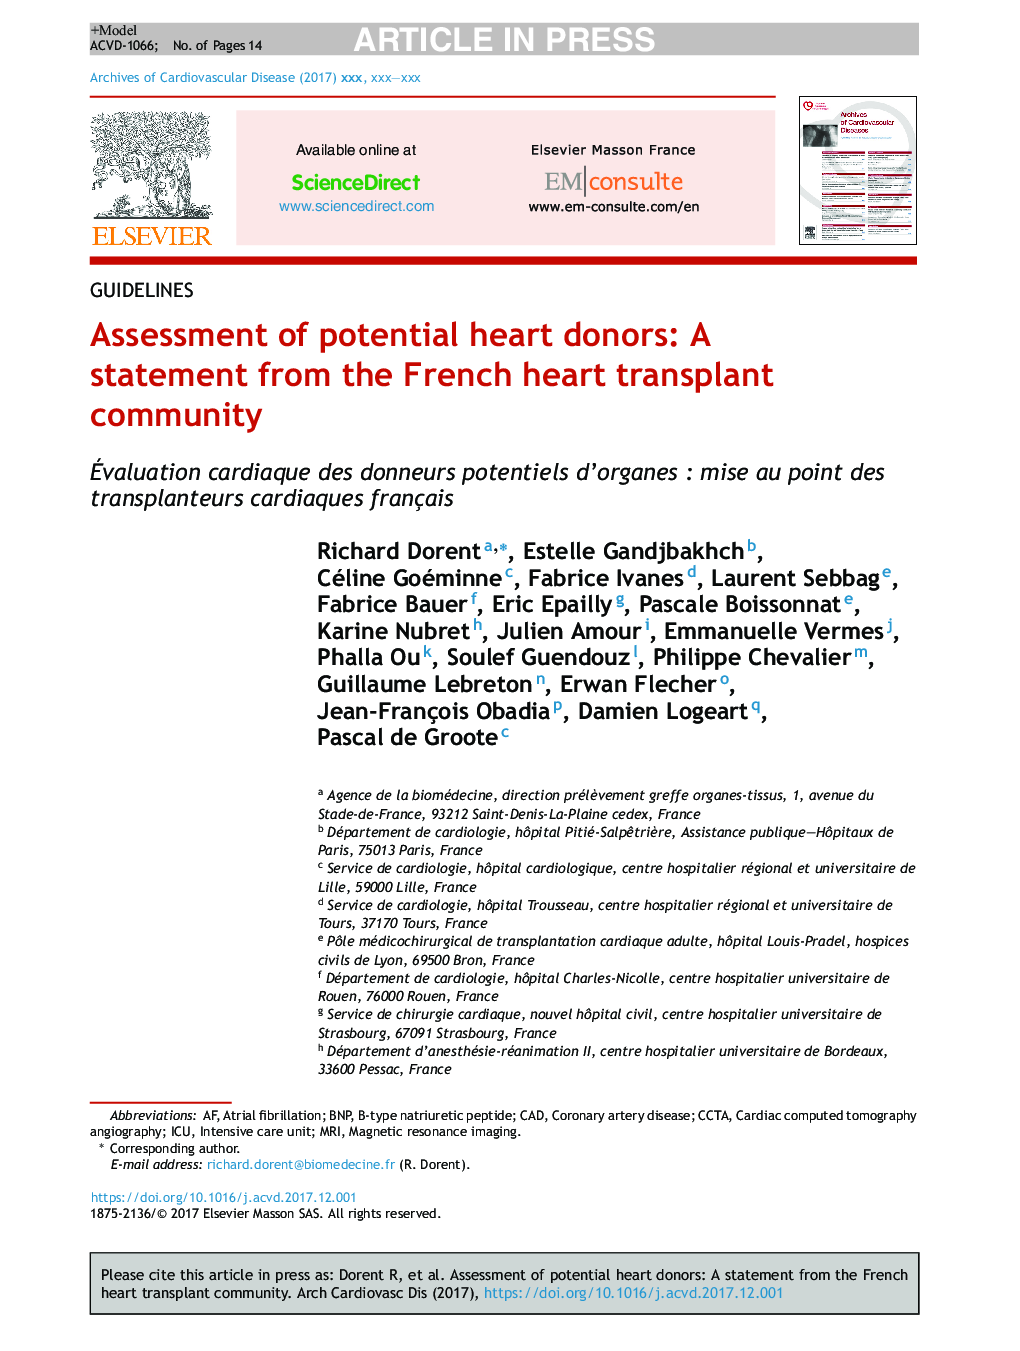 ارزیابی اهداکنندگان بالقوه قلب: بیانیه ای از انجمن پیوند قلب فرانسوی 